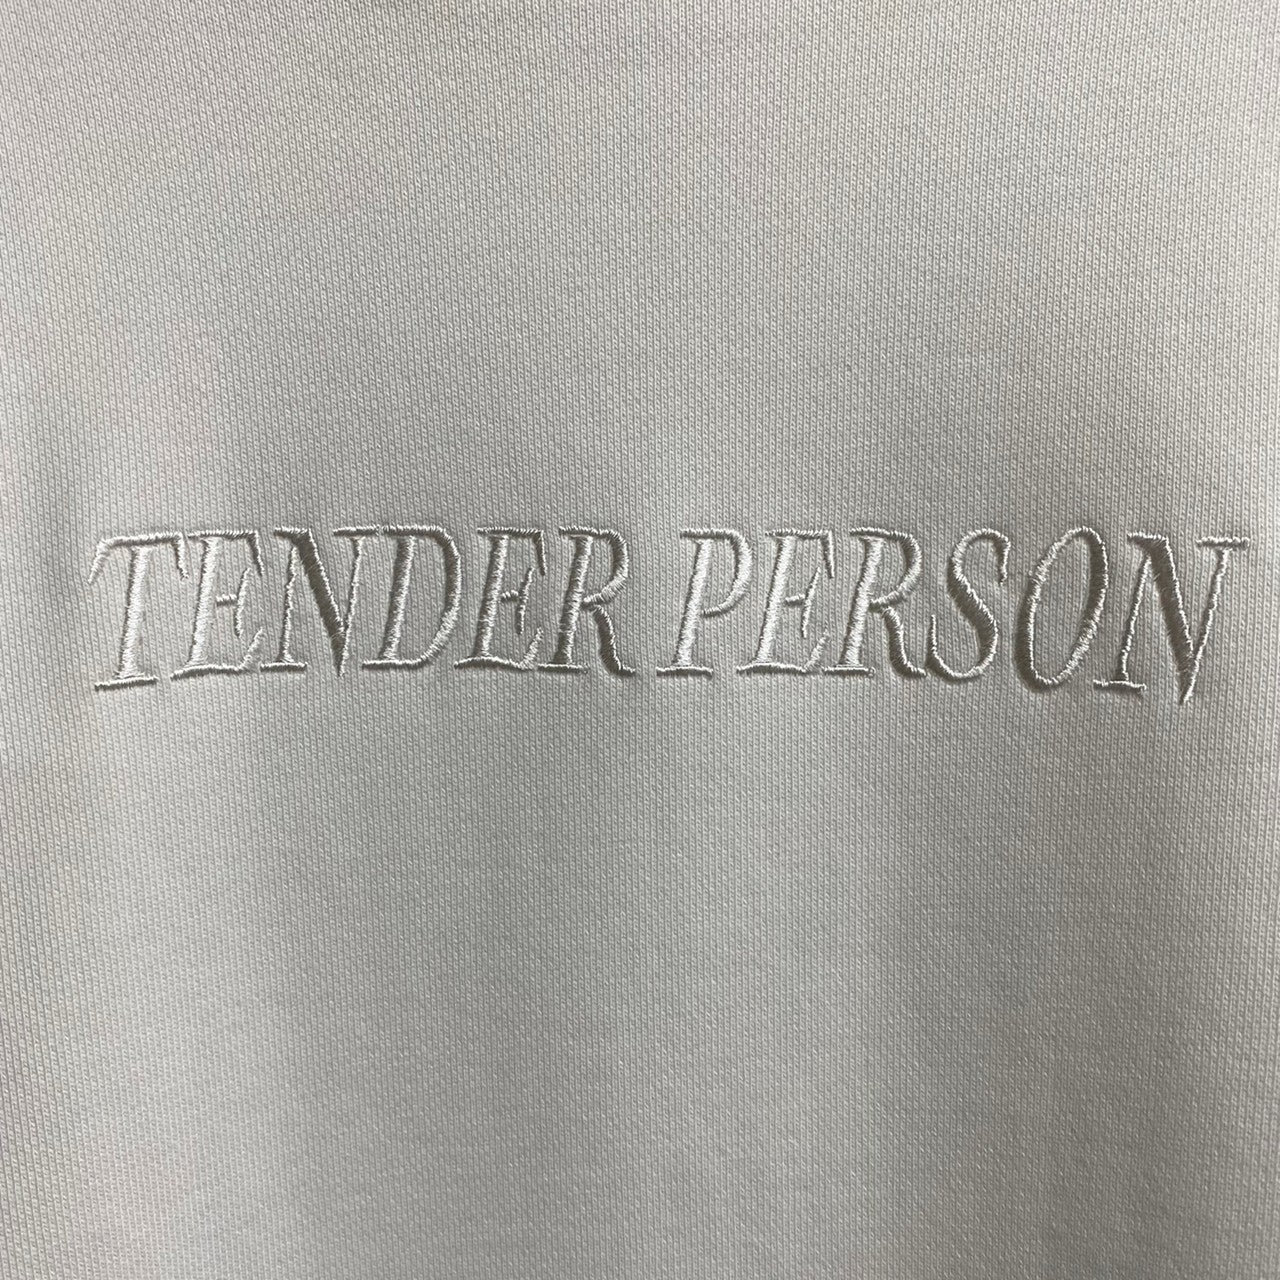 [ FINAL ONE ! ] TENDER PERSON STANDERD HOODIE / TENDER PERSON